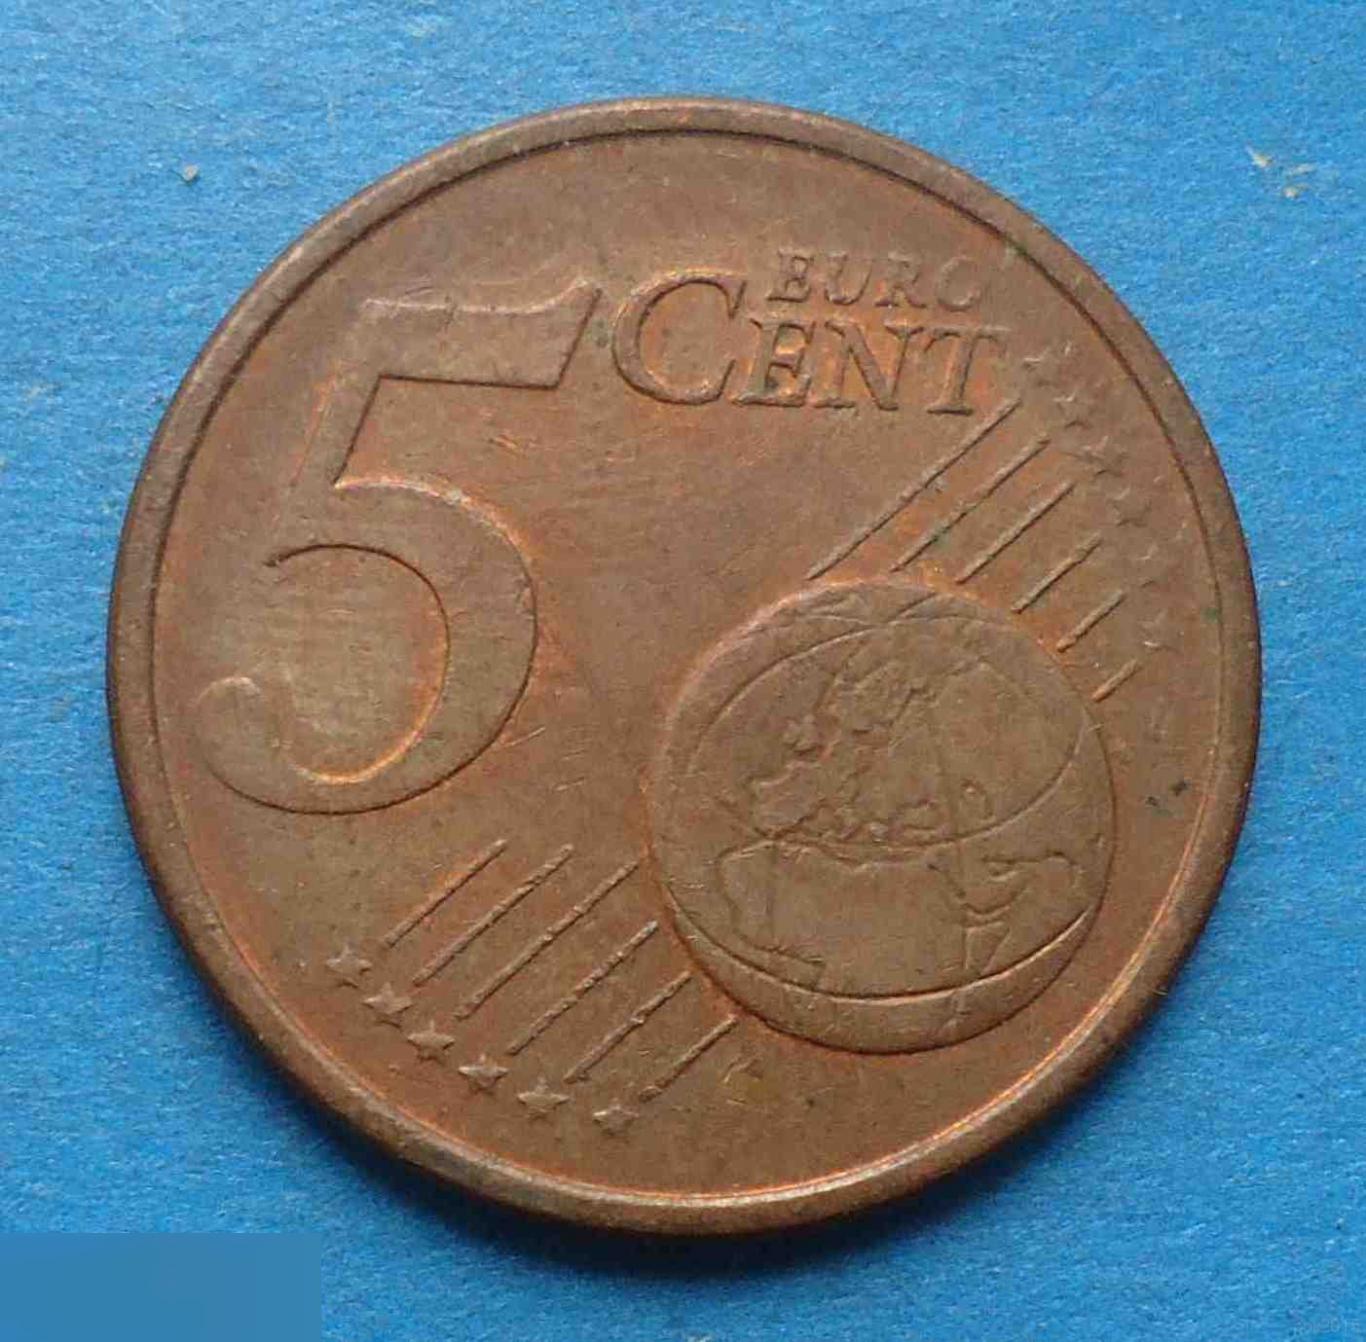 5 евро центов 2002 A